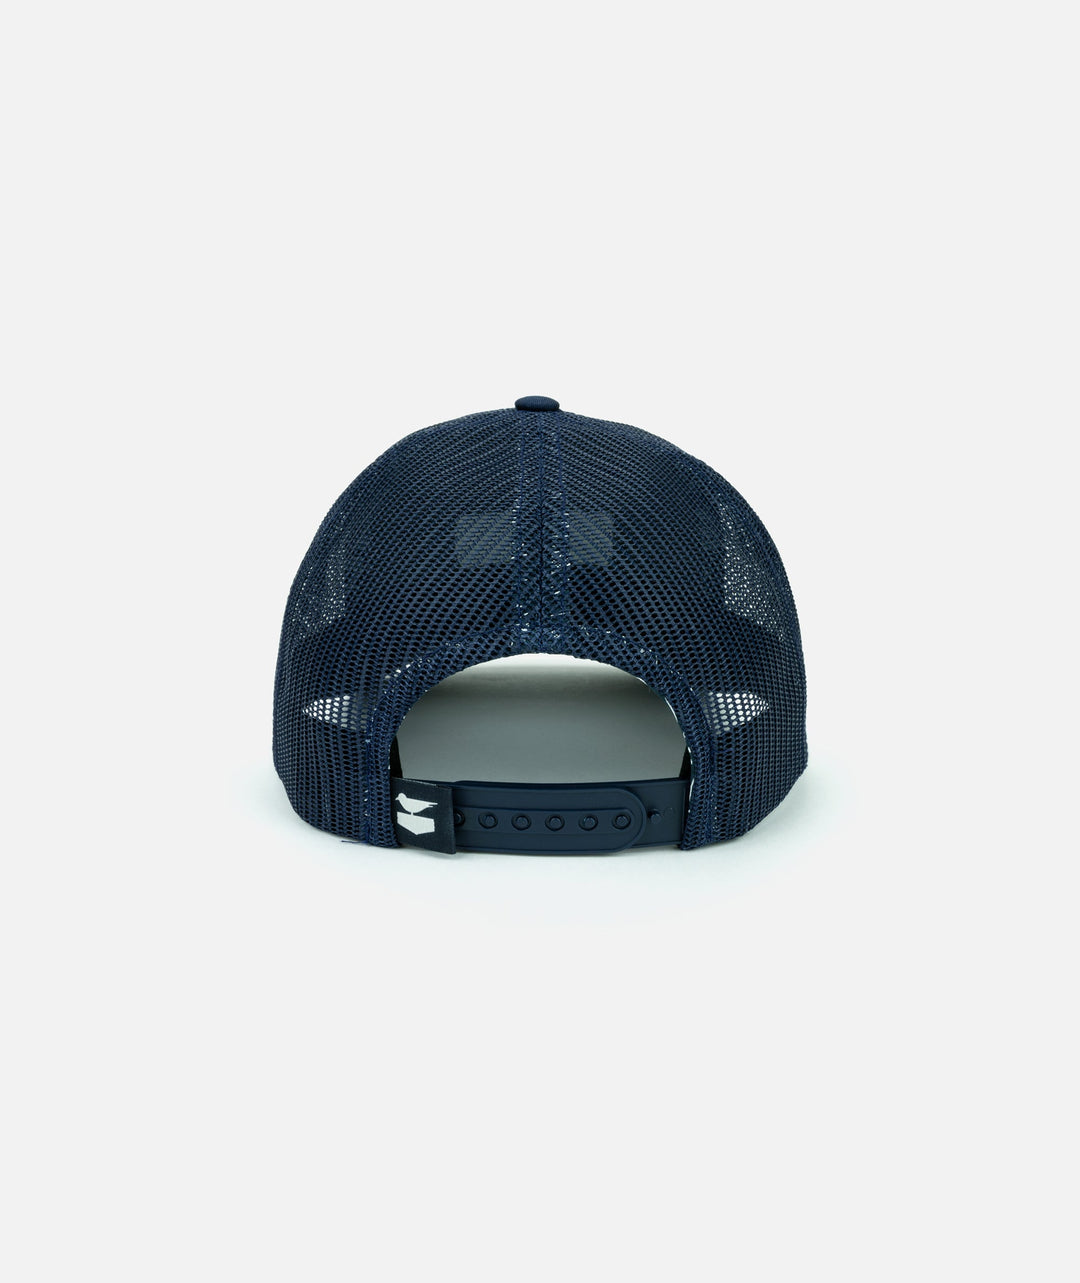 Loggin' Supply Hat - Navy - Sun Diego Boardshop